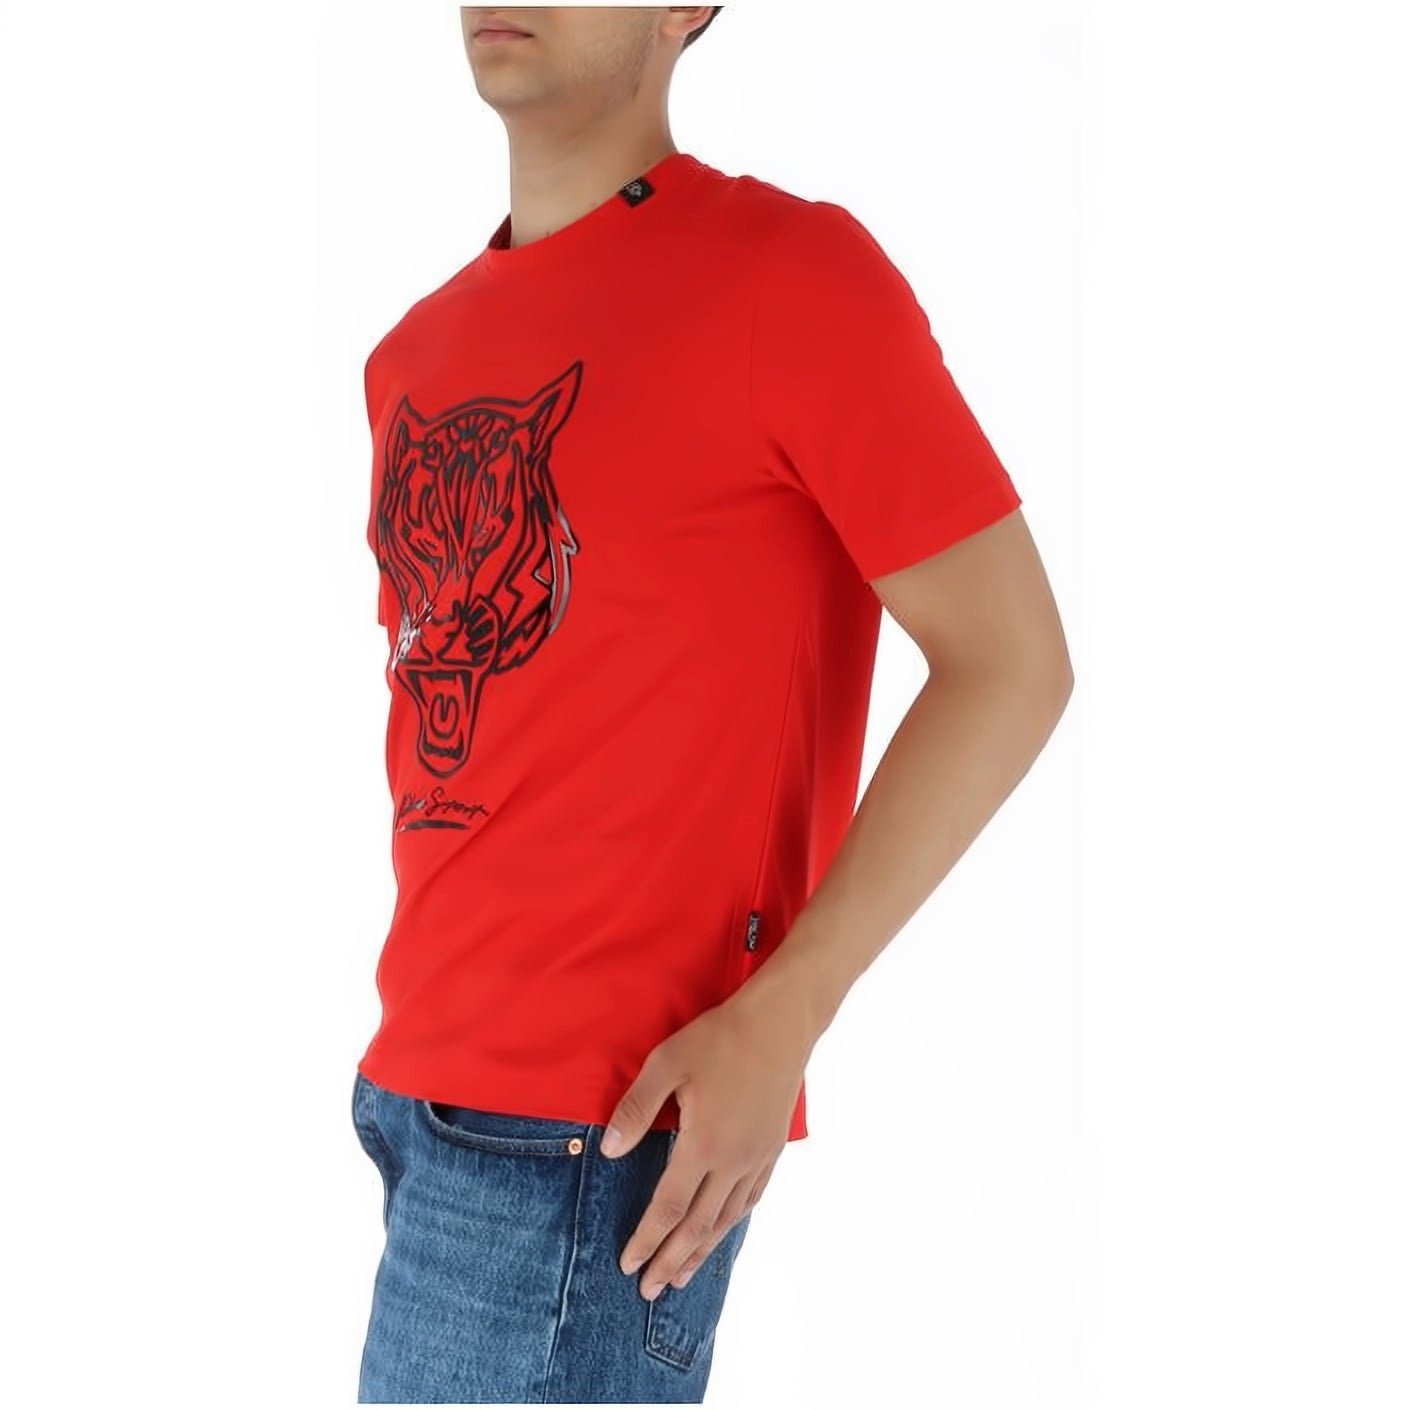 NECK hoher T-Shirt PLEIN Look, ROUND Stylischer SPORT Tragekomfort, Farbauswahl vielfältige